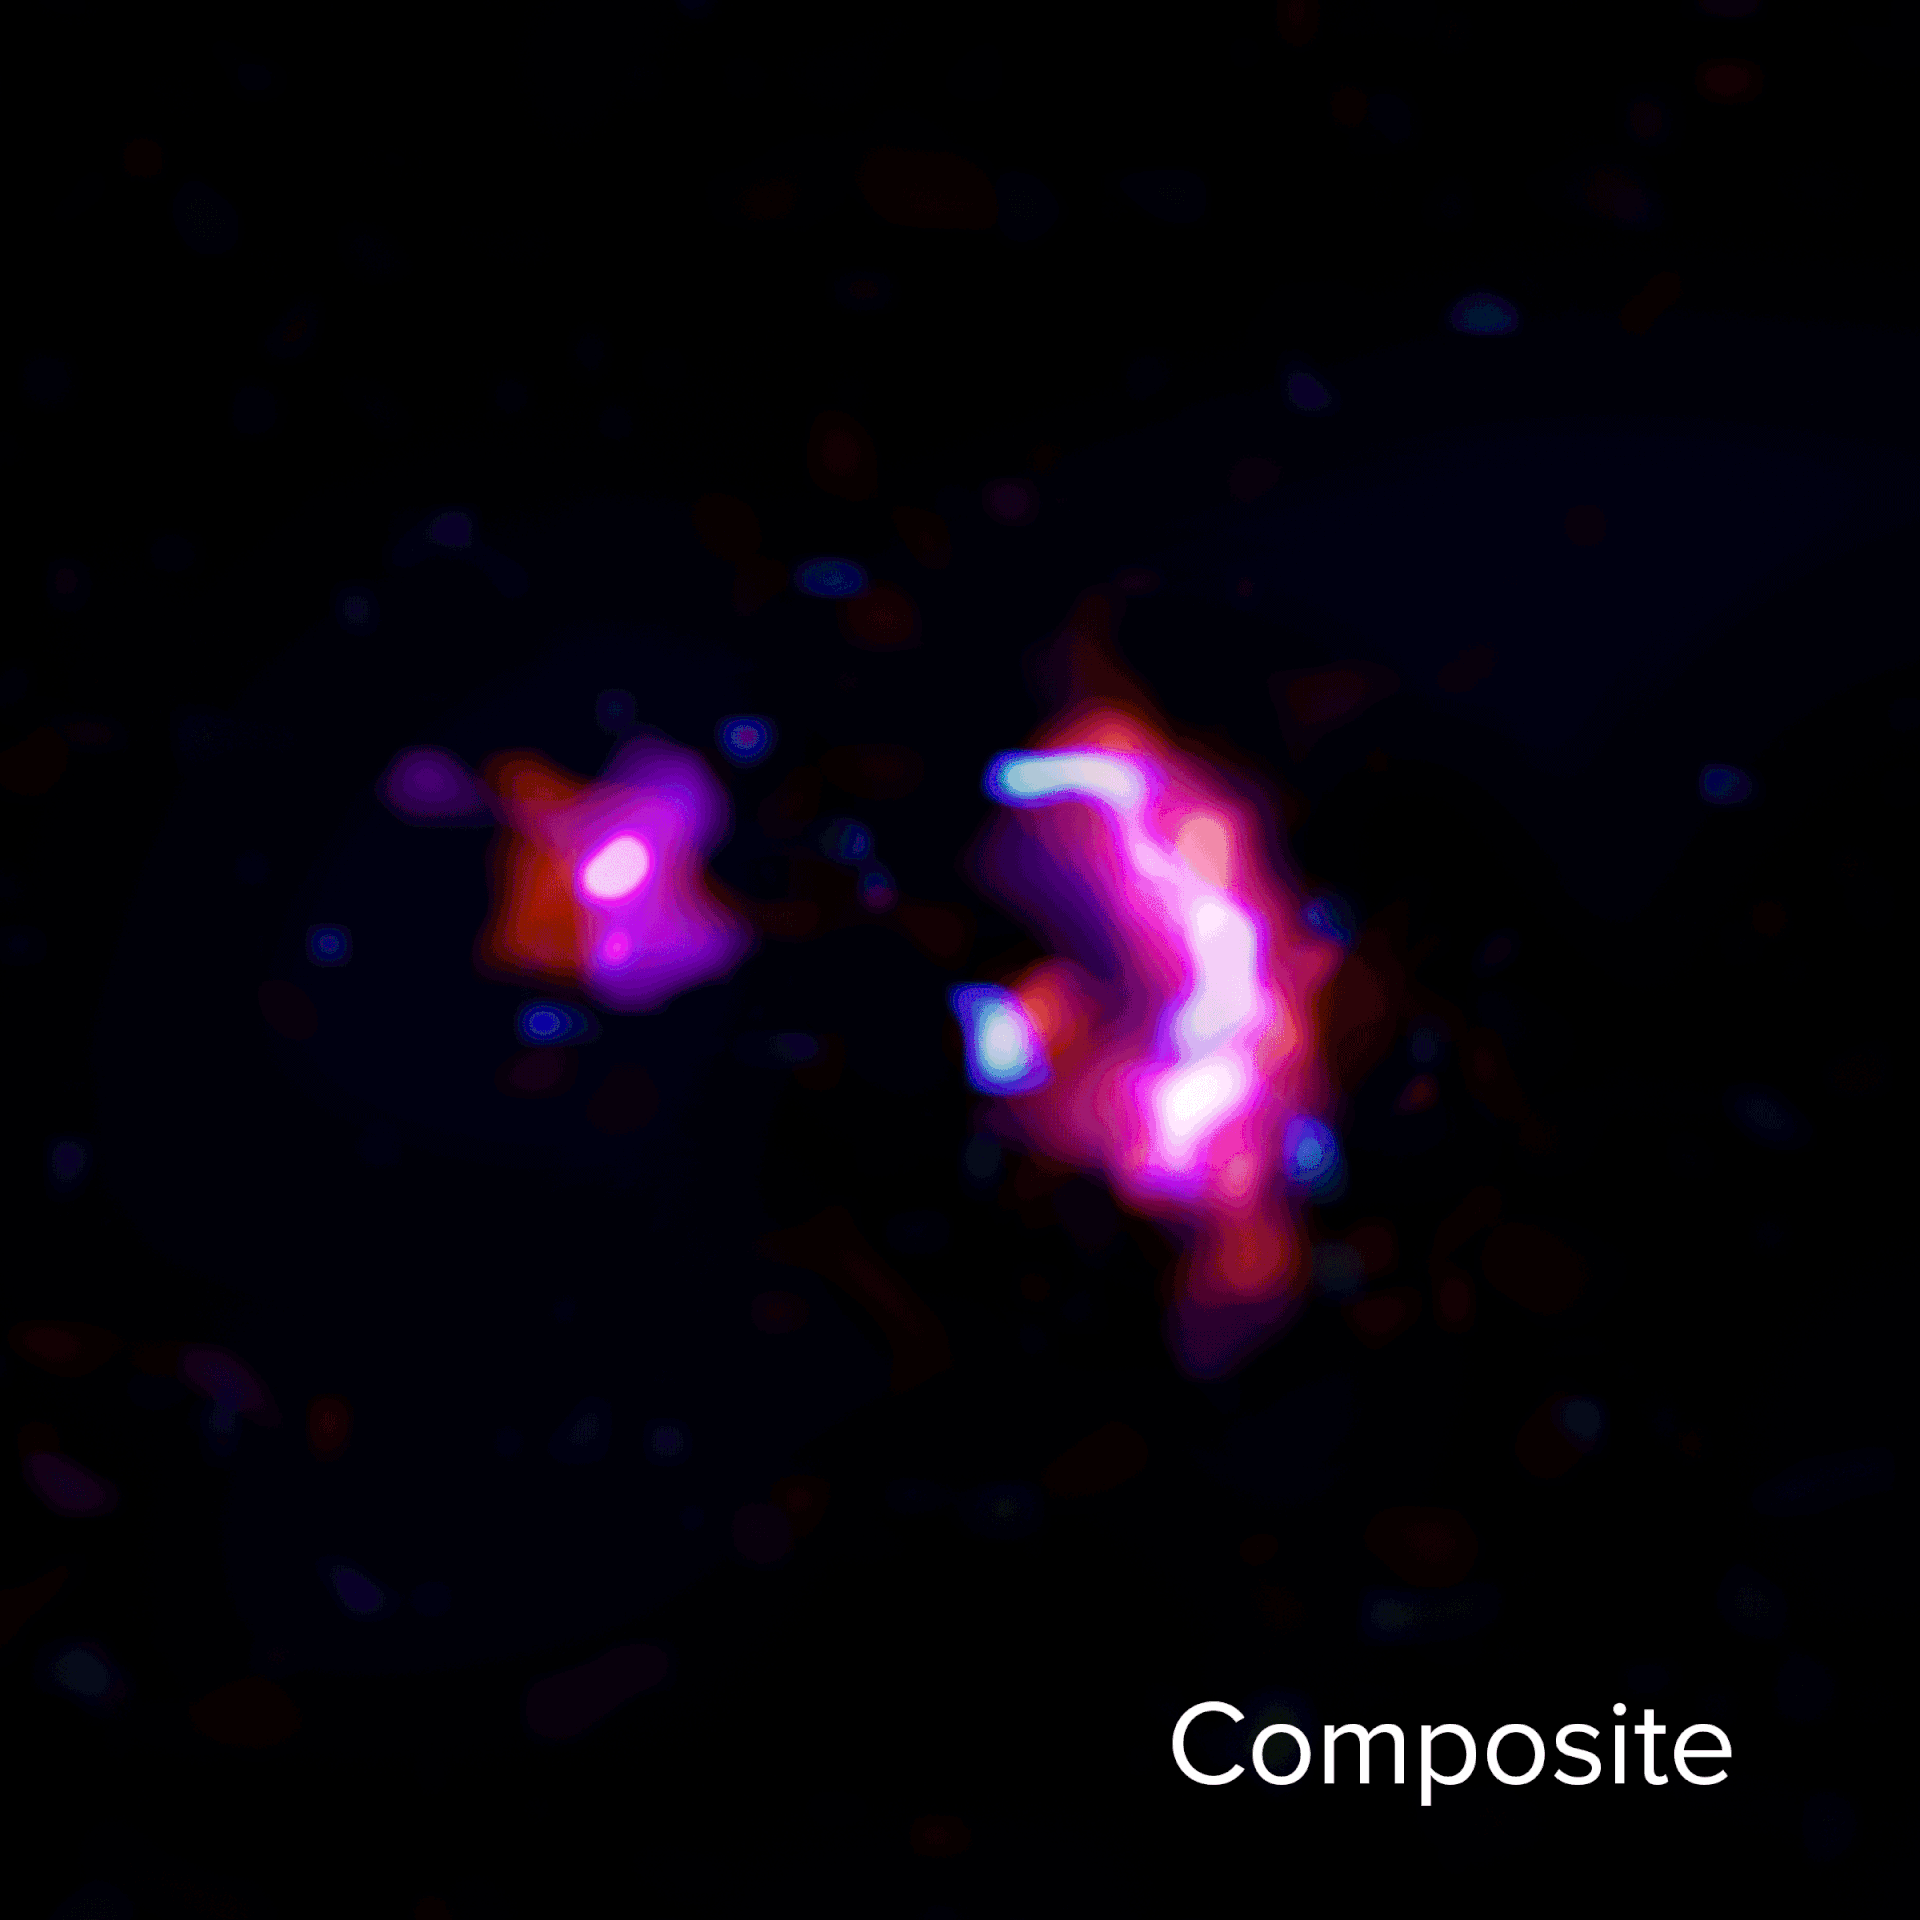 <p>Esta imagen animada muestra el continuo de polvo y las líneas moleculares observadas por ALMA en la pareja de jóvenes galaxias masivas conocida como SPT0311-58. La animación empieza con una combinación del continuo de polvo y las líneas moleculares de H2O y CO. A continuación, se aprecia el continuo de polvo representado en rojo, las líneas moleculares de H2O en azul, las líneas moleculares de monóxido de carbono (10-9) en rosado y azul oscuro, las líneas moleculares de monóxido de carbono (7-6) en magenta y las líneas moleculares de monóxido de carbono (6-5) en morado.<br />
Créditos: ALMA (ESO/NAOJ/NRAO) /S. Dagnello (NRAO)</p>
